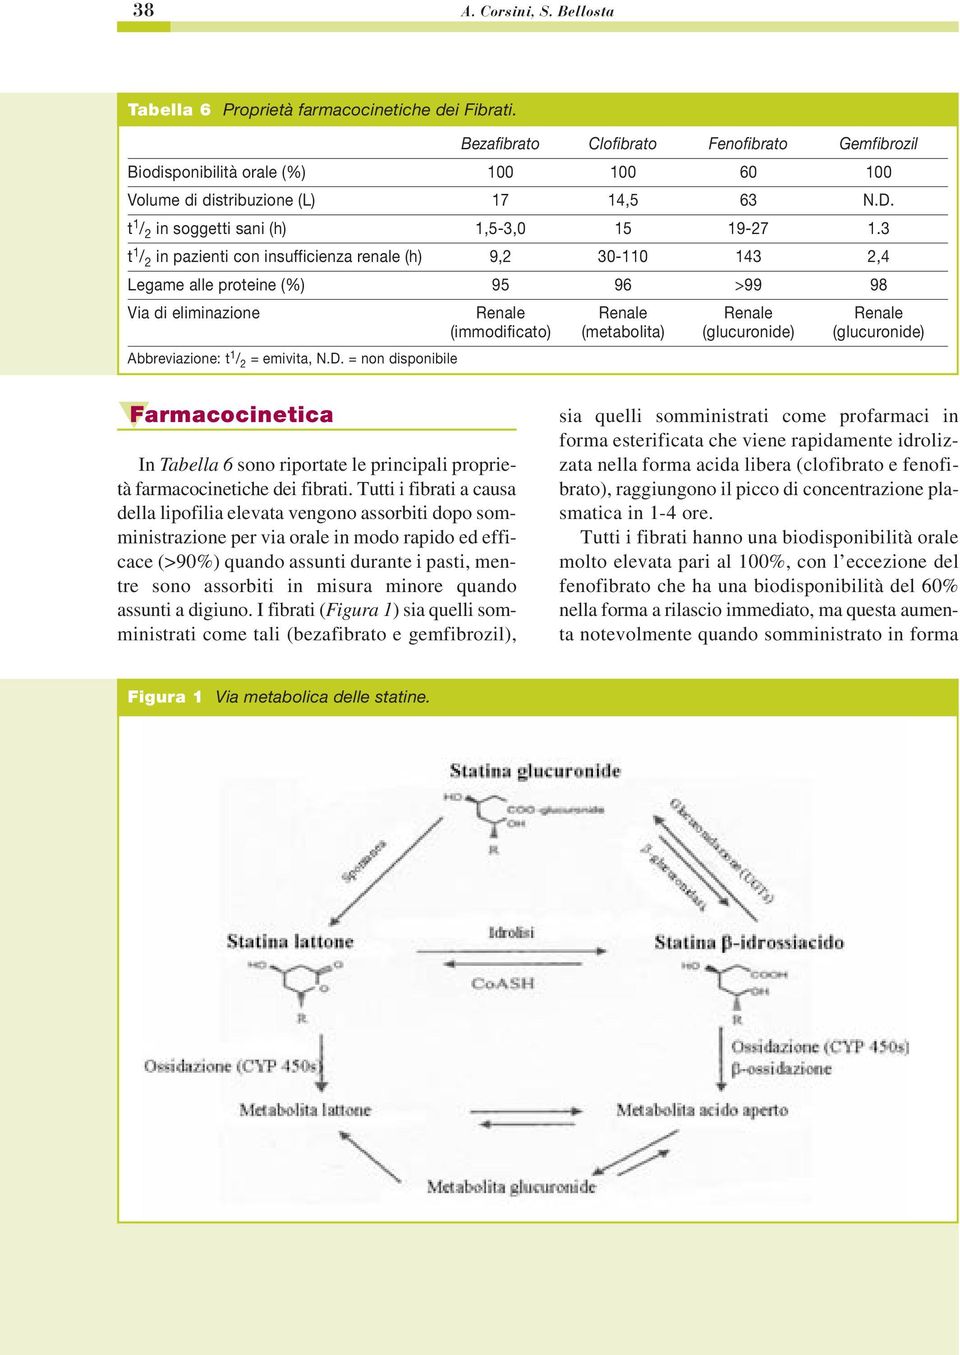 3 t 1 / 2 in pazienti con insufficienza renale (h) 9,2 30-110 143 2,4 Legame alle proteine (%) 95 96 >99 98 Via di eliminazione Renale Renale Renale Renale (immodificato) (metabolita) (glucuronide)